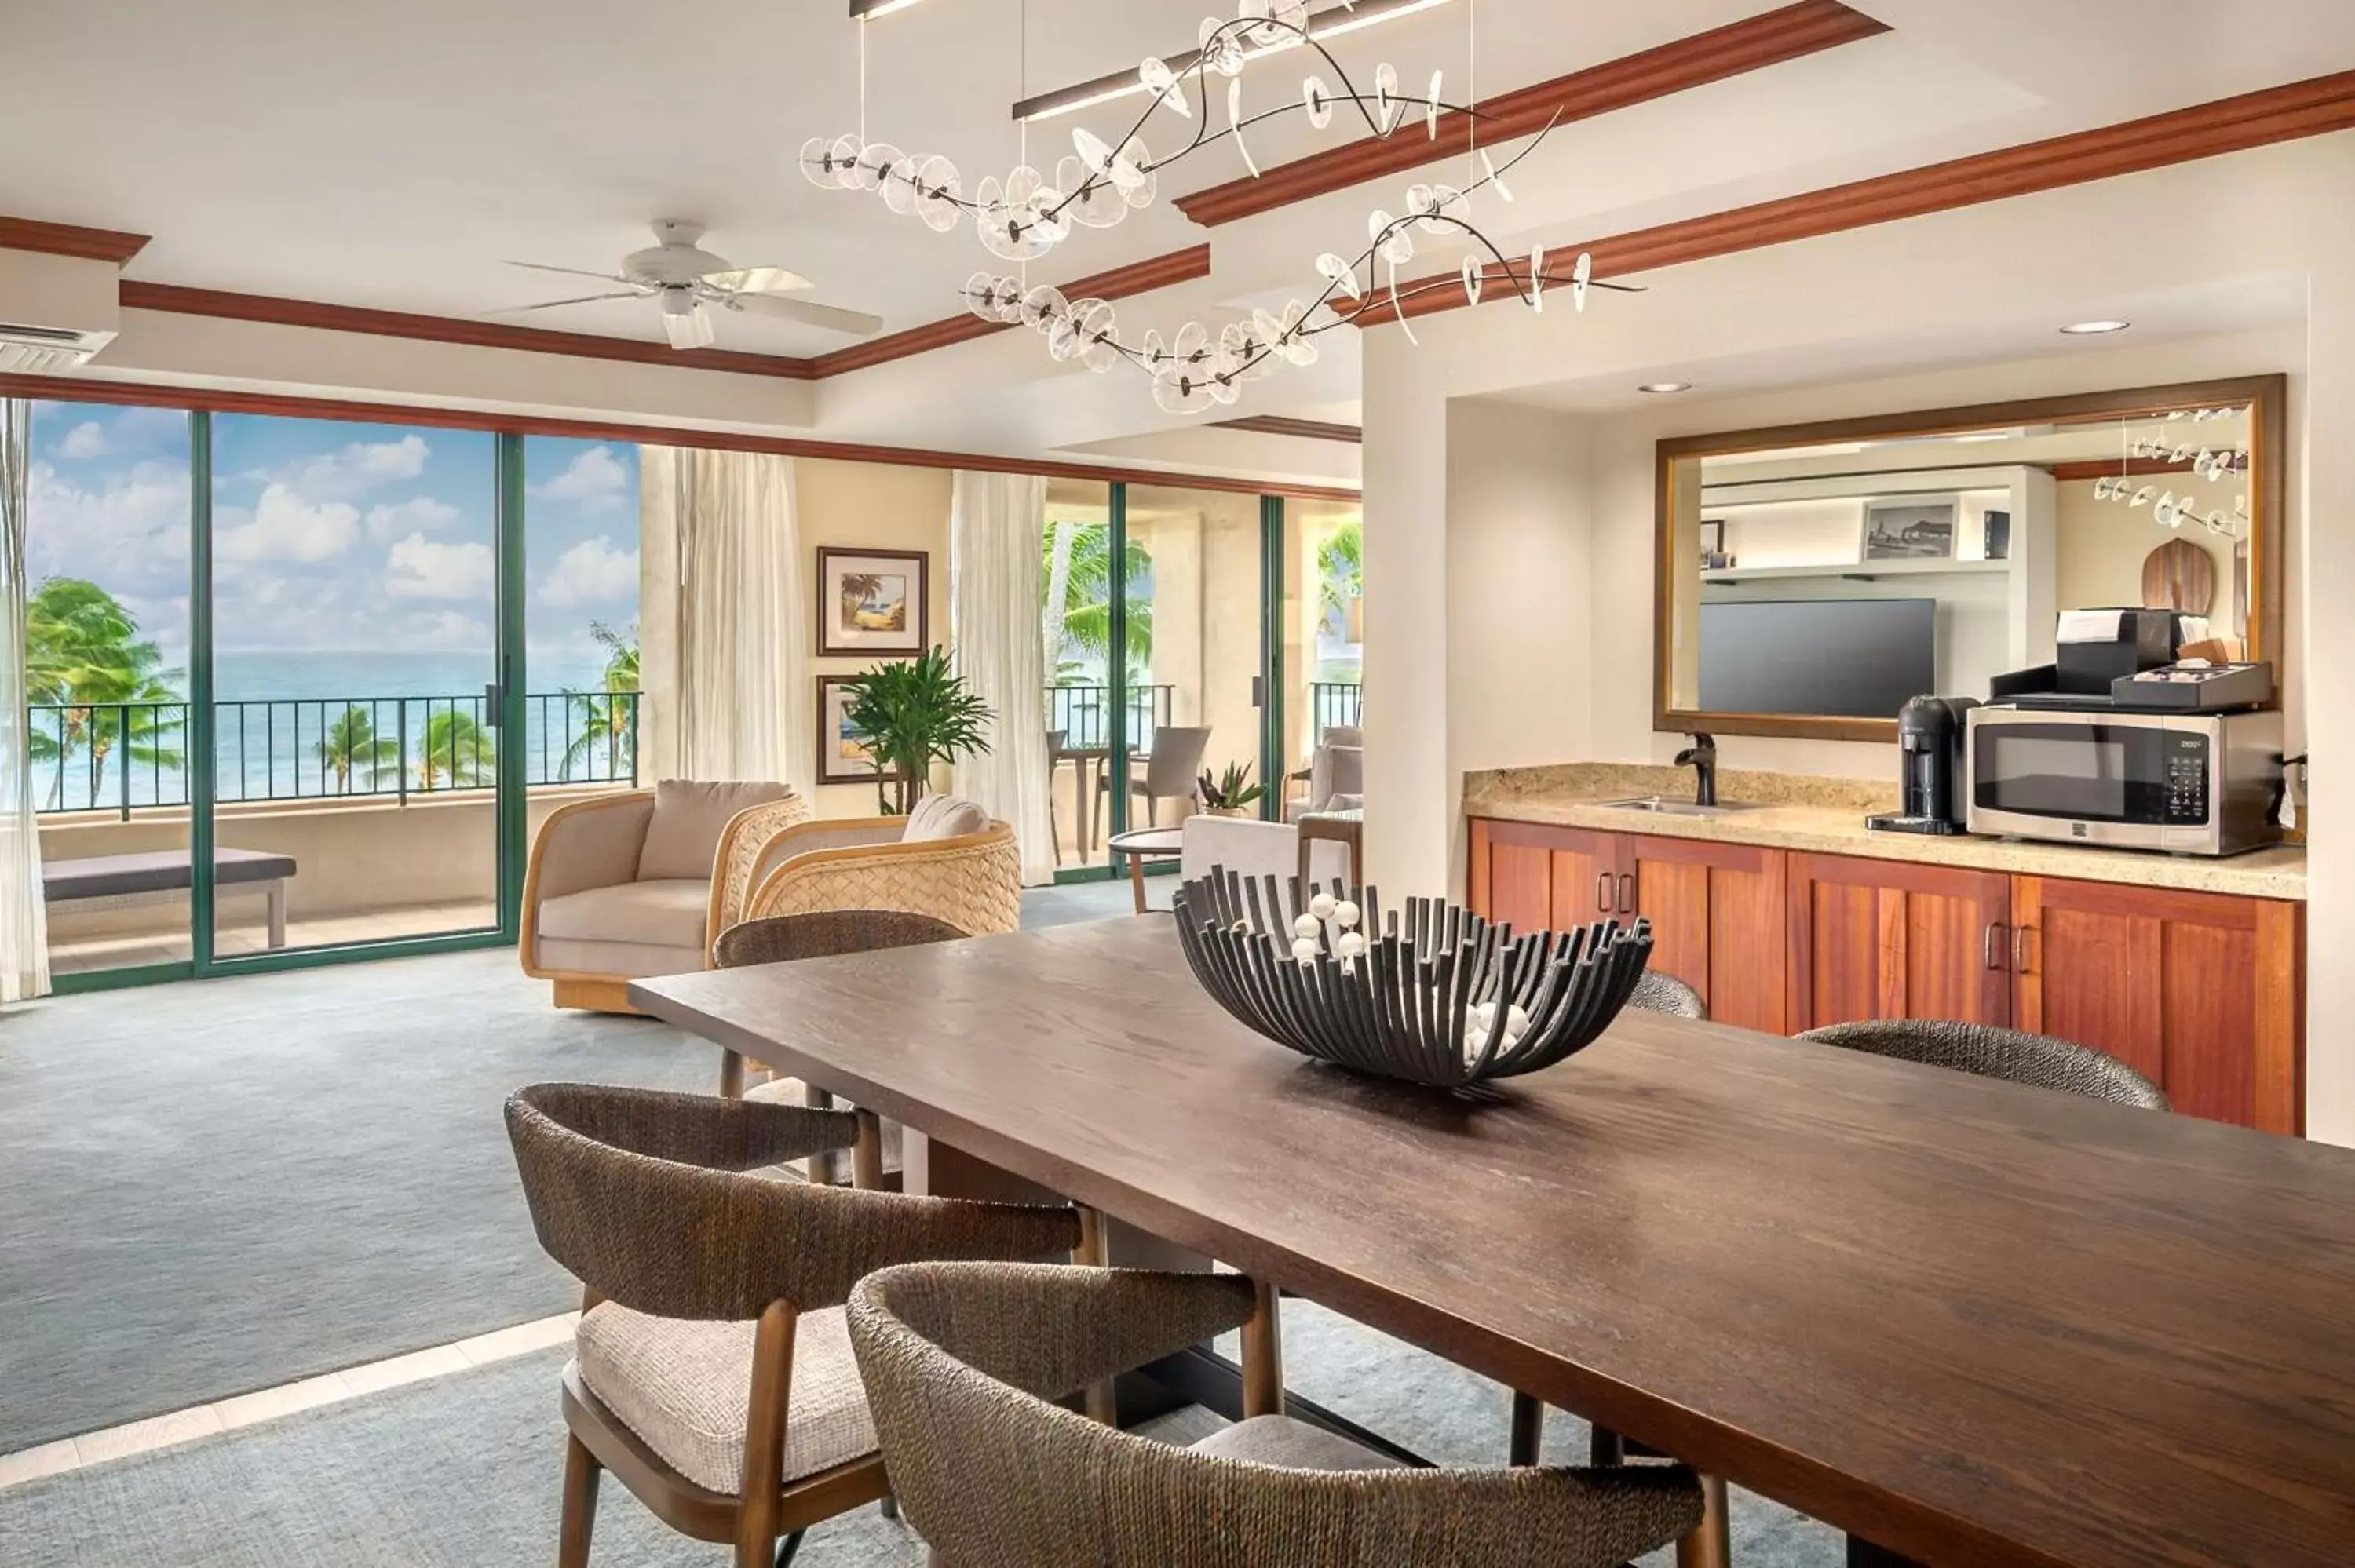 Photo of the whole room in Grand Hyatt Kauai Resort & Spa